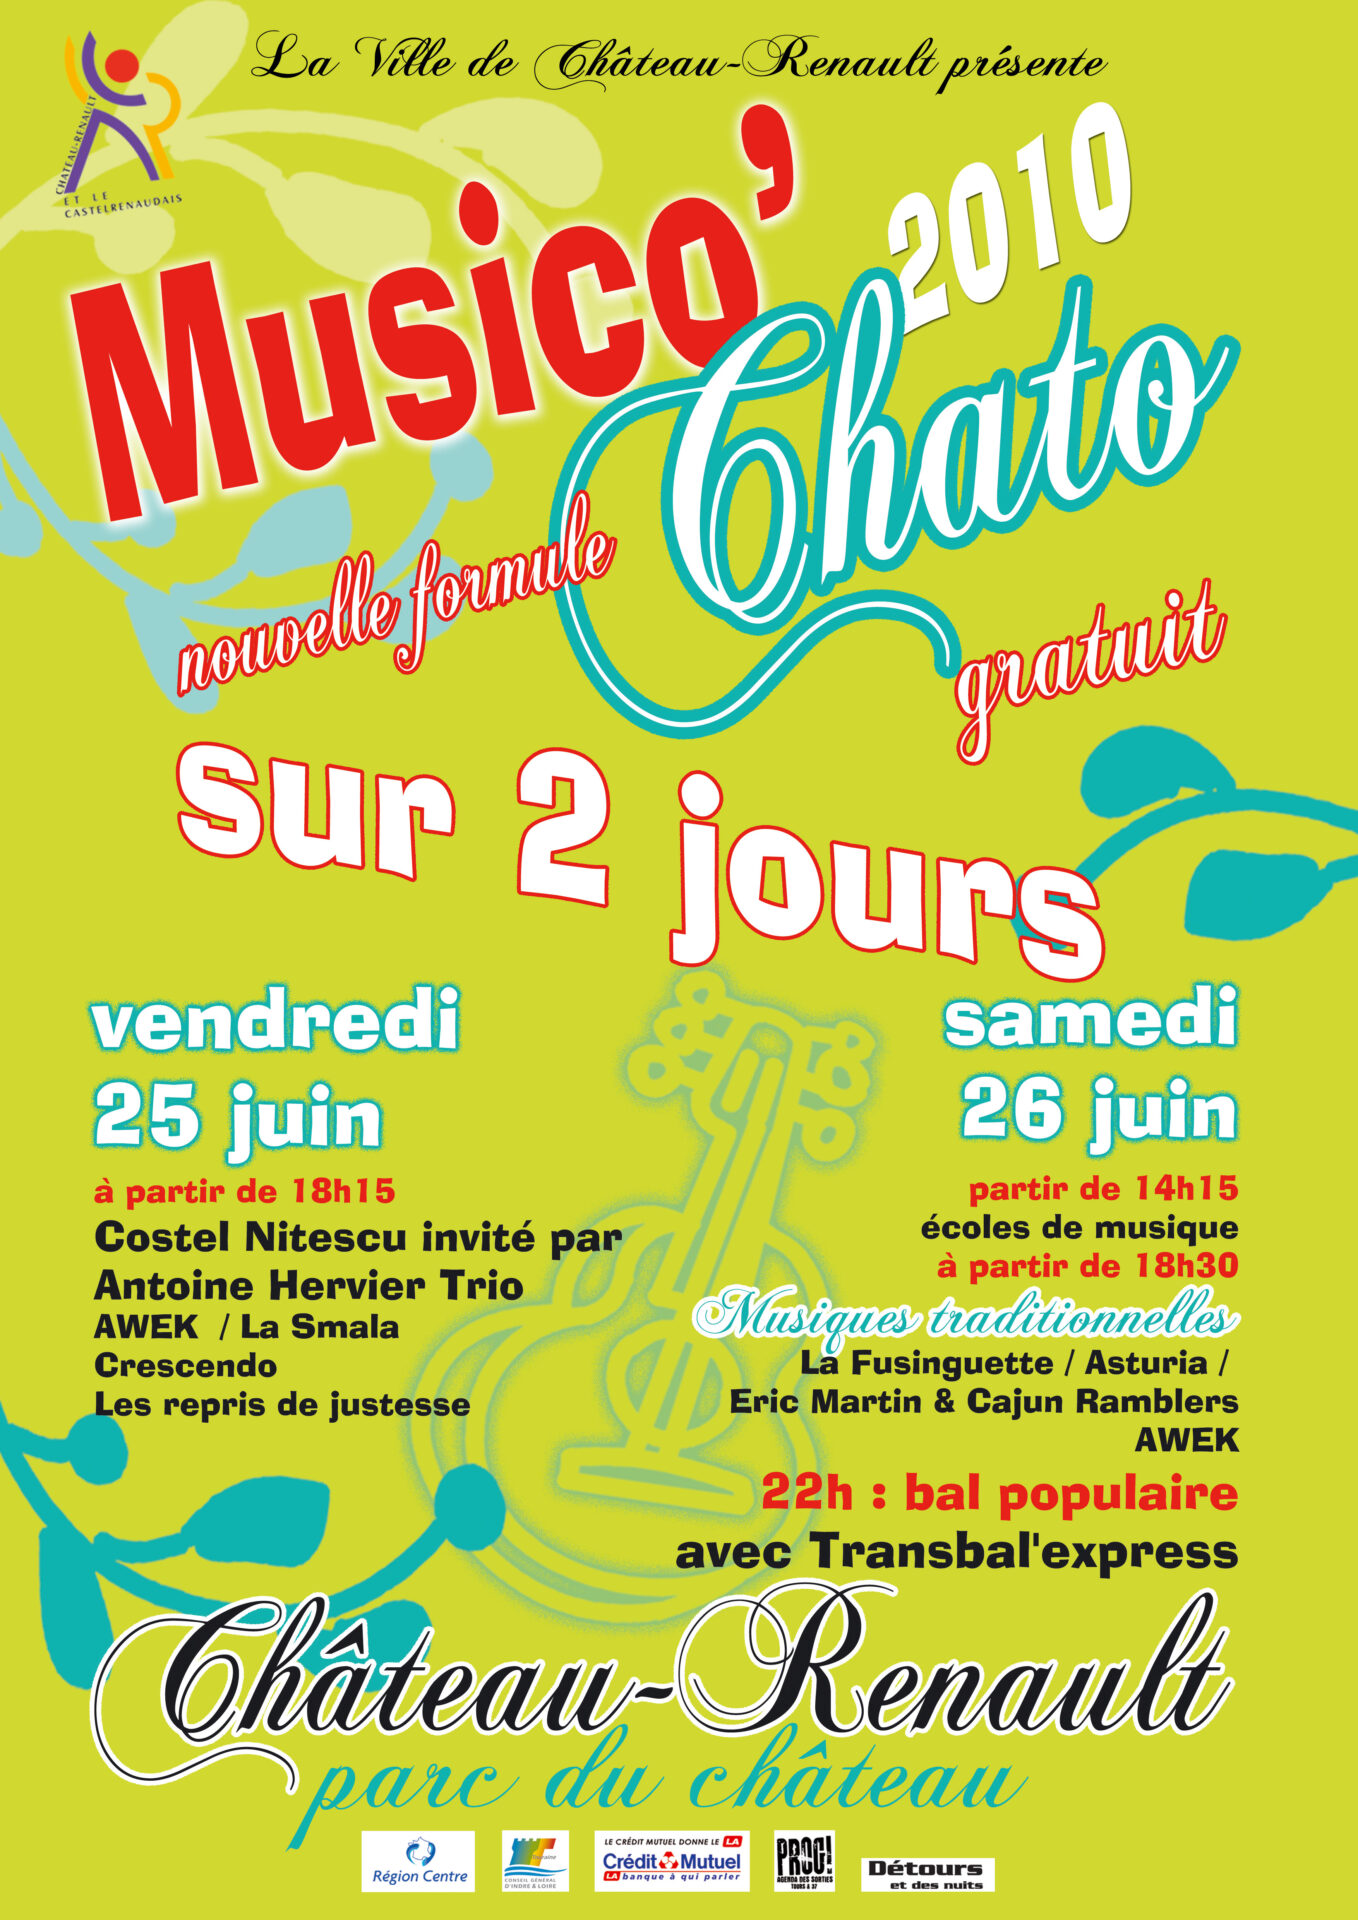 Affiche Musico'Chato 2010